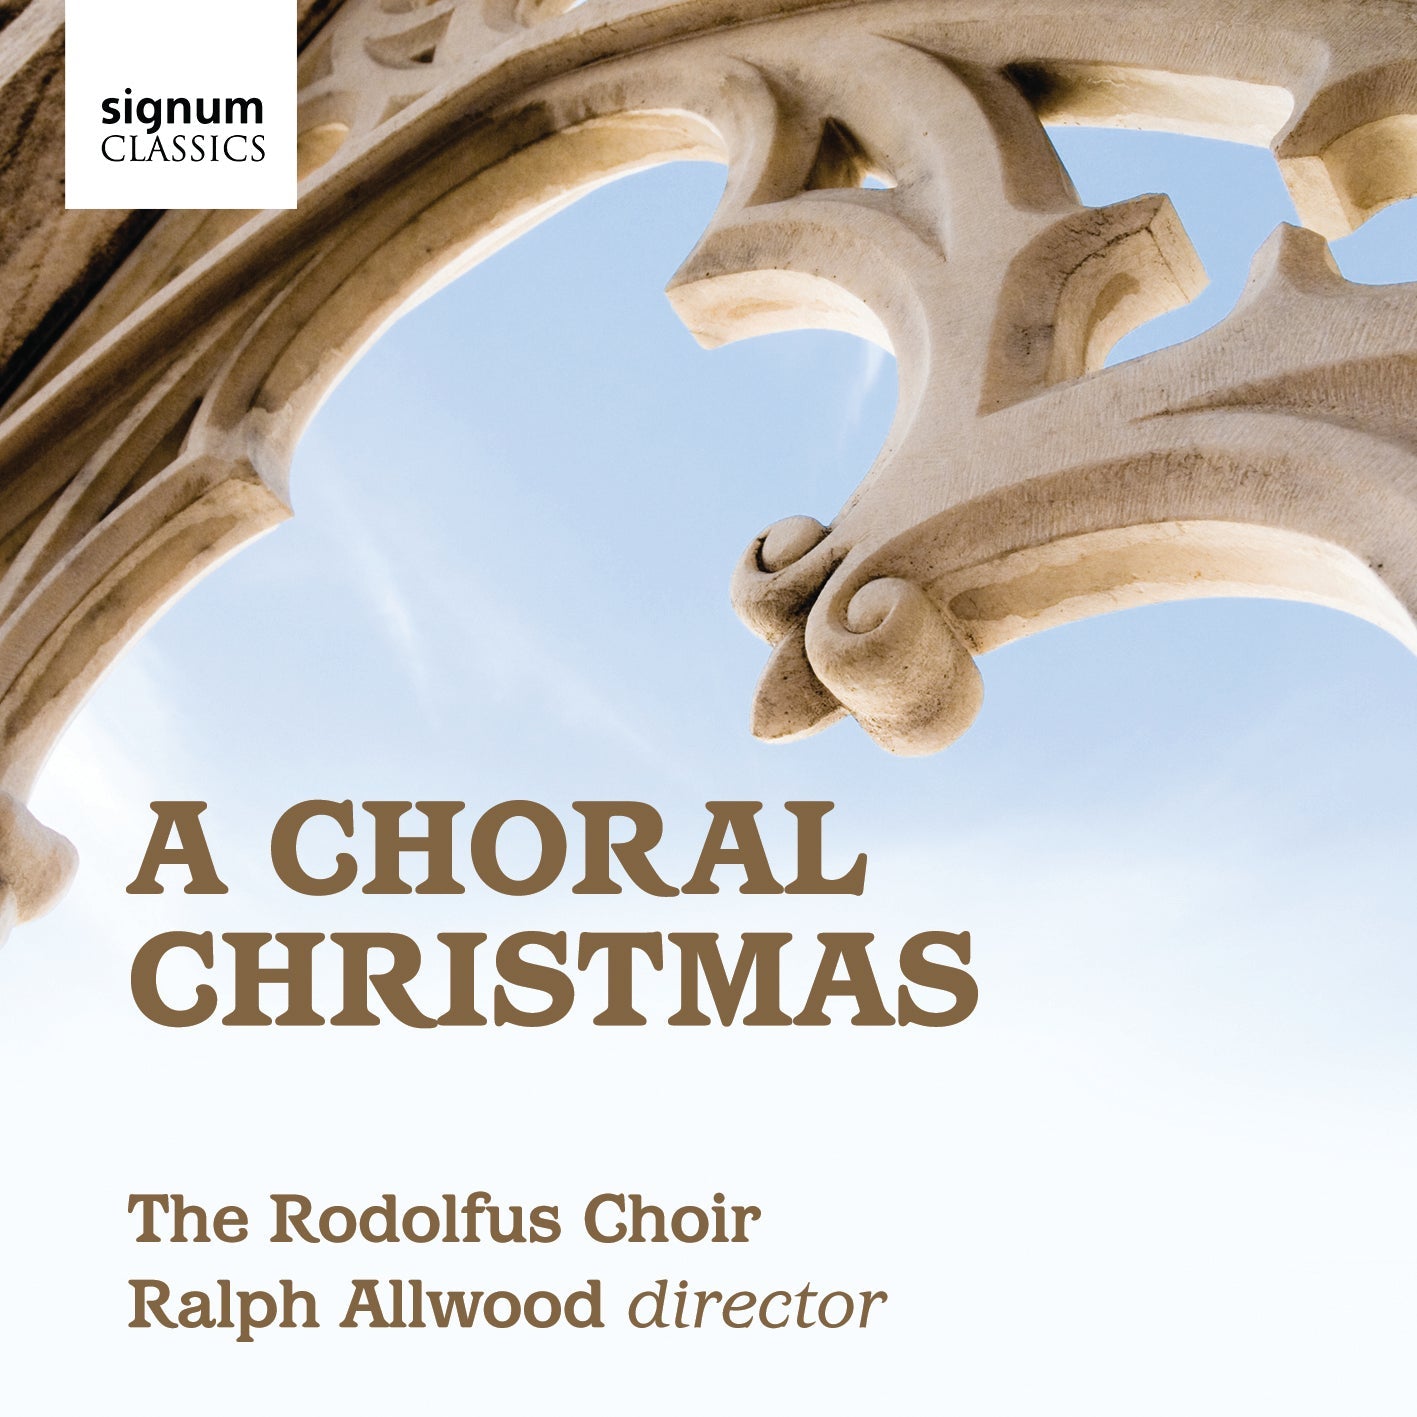 A Choral Christmas / Rodolfus Choir